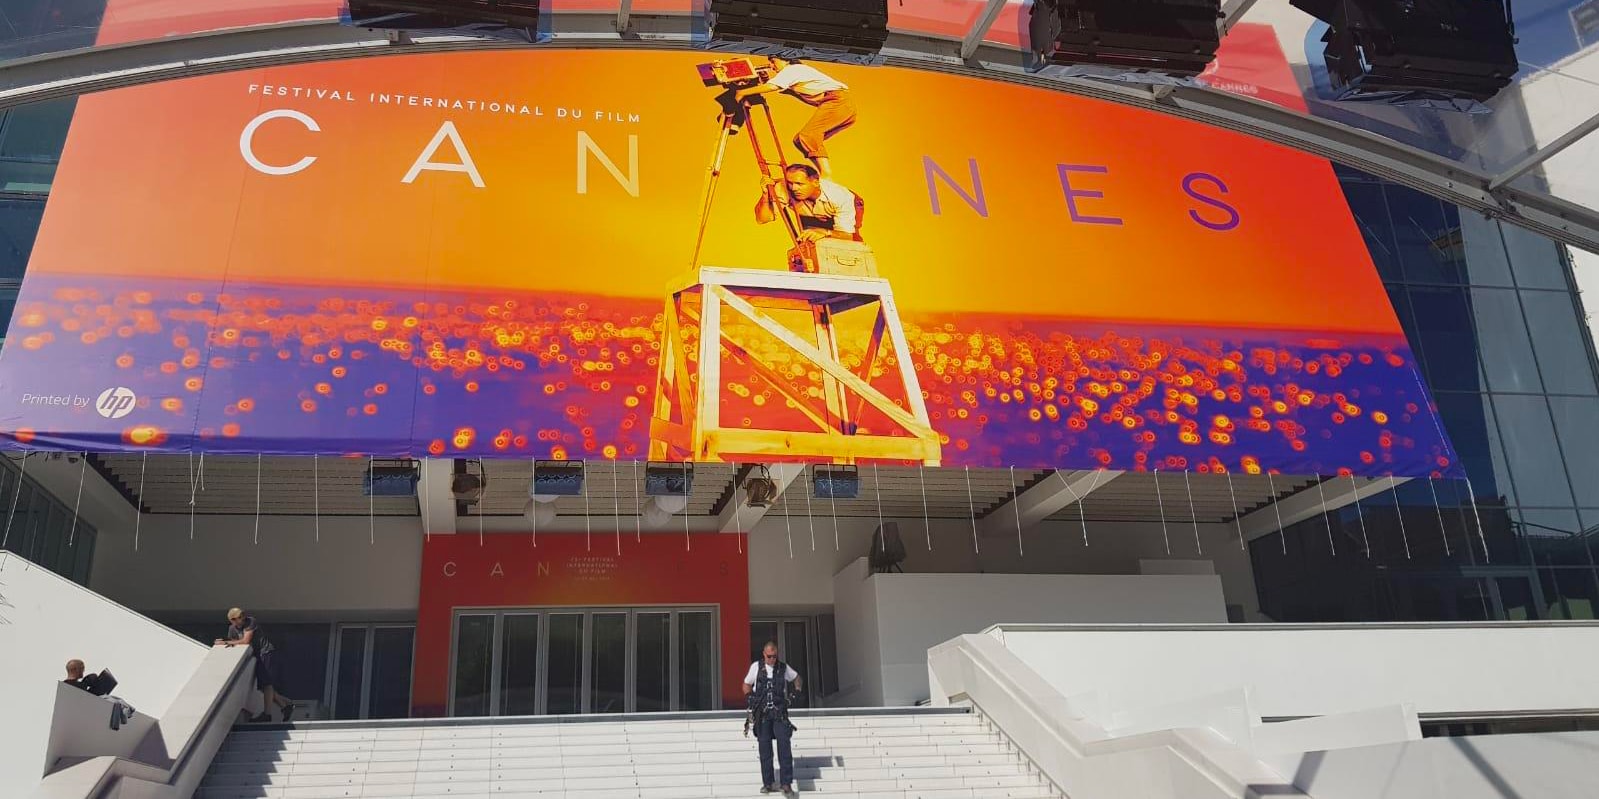 La sociéte H2O Pub a imprimé l'affiche monumentale du festival de Cannes 2019.